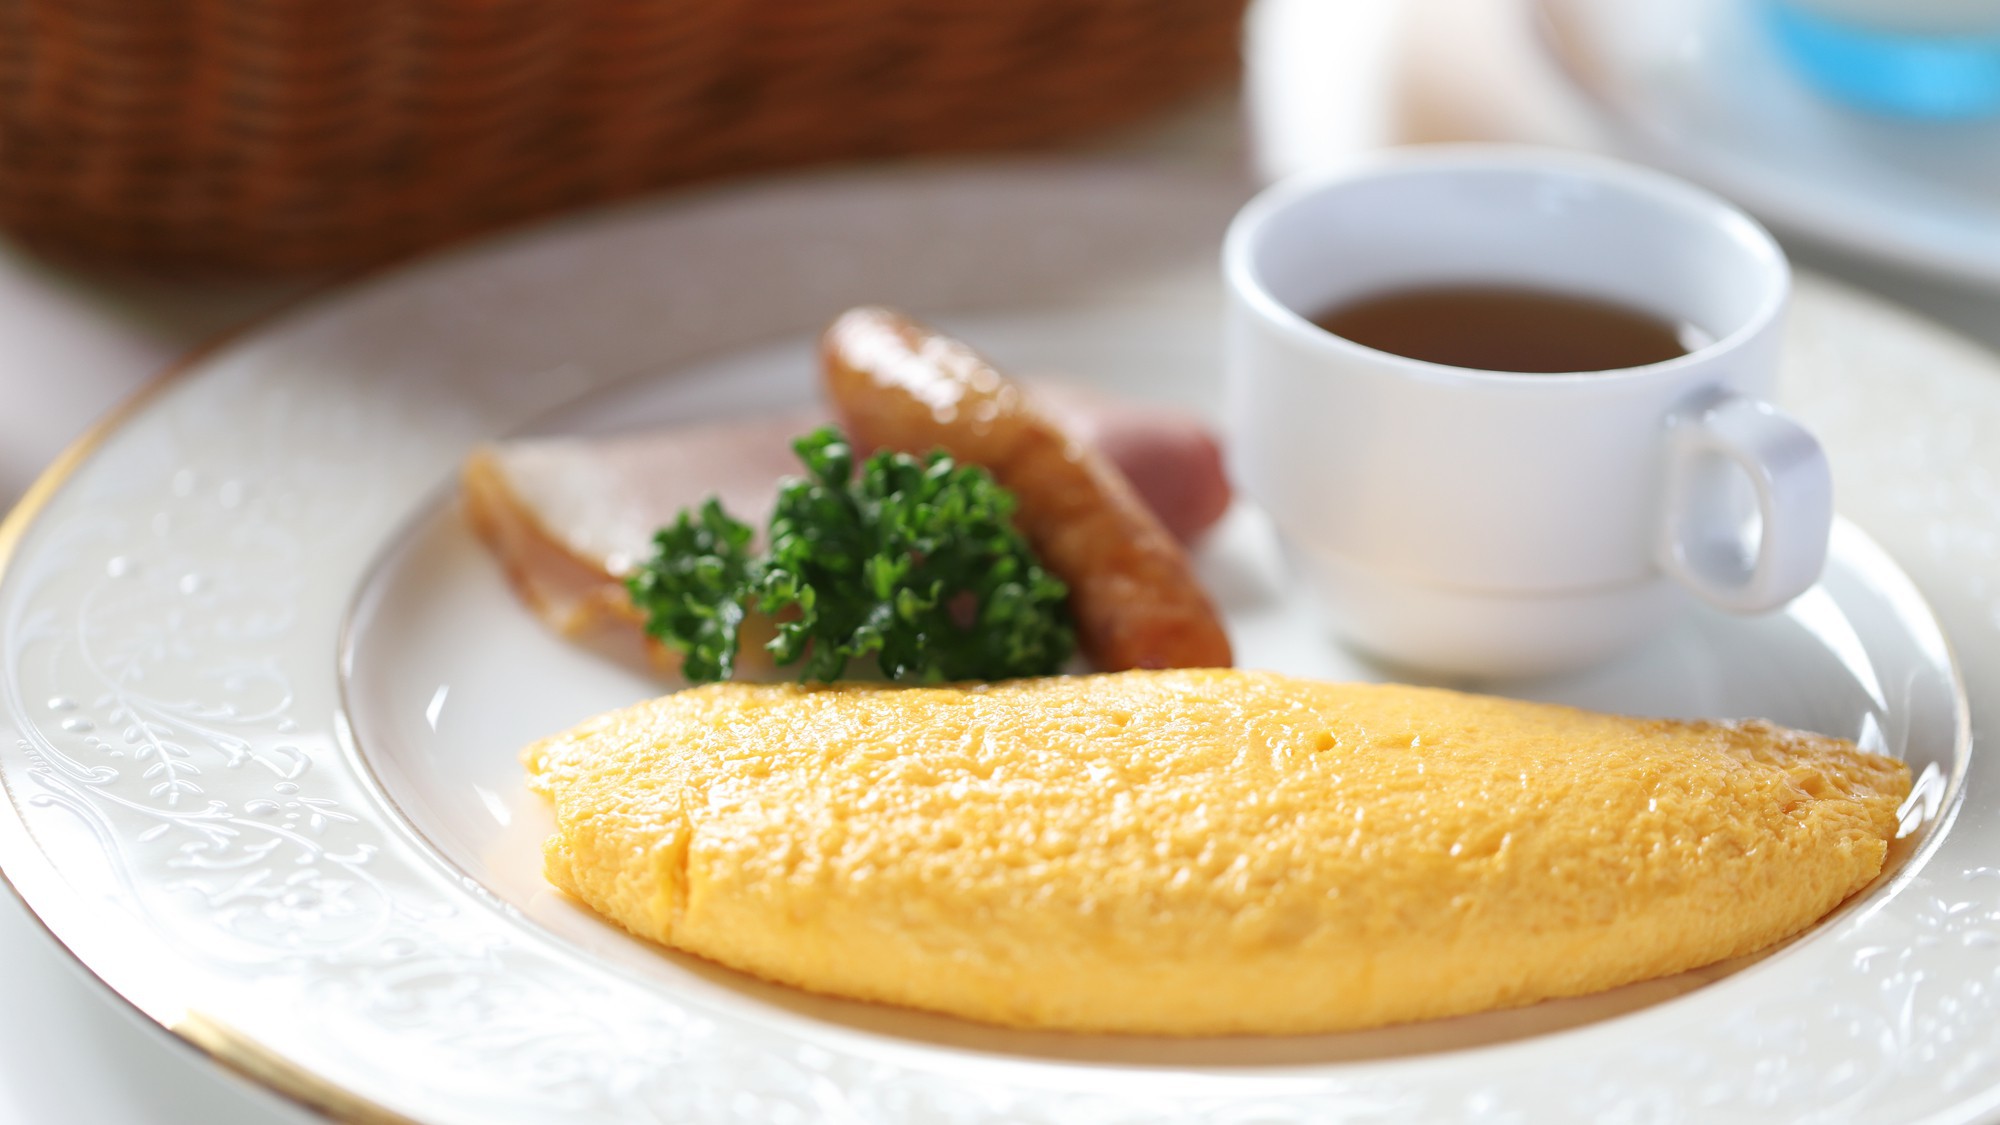 鎌倉湘南でのんびり休日を! 洋食セットの朝食付プラン／朝食付